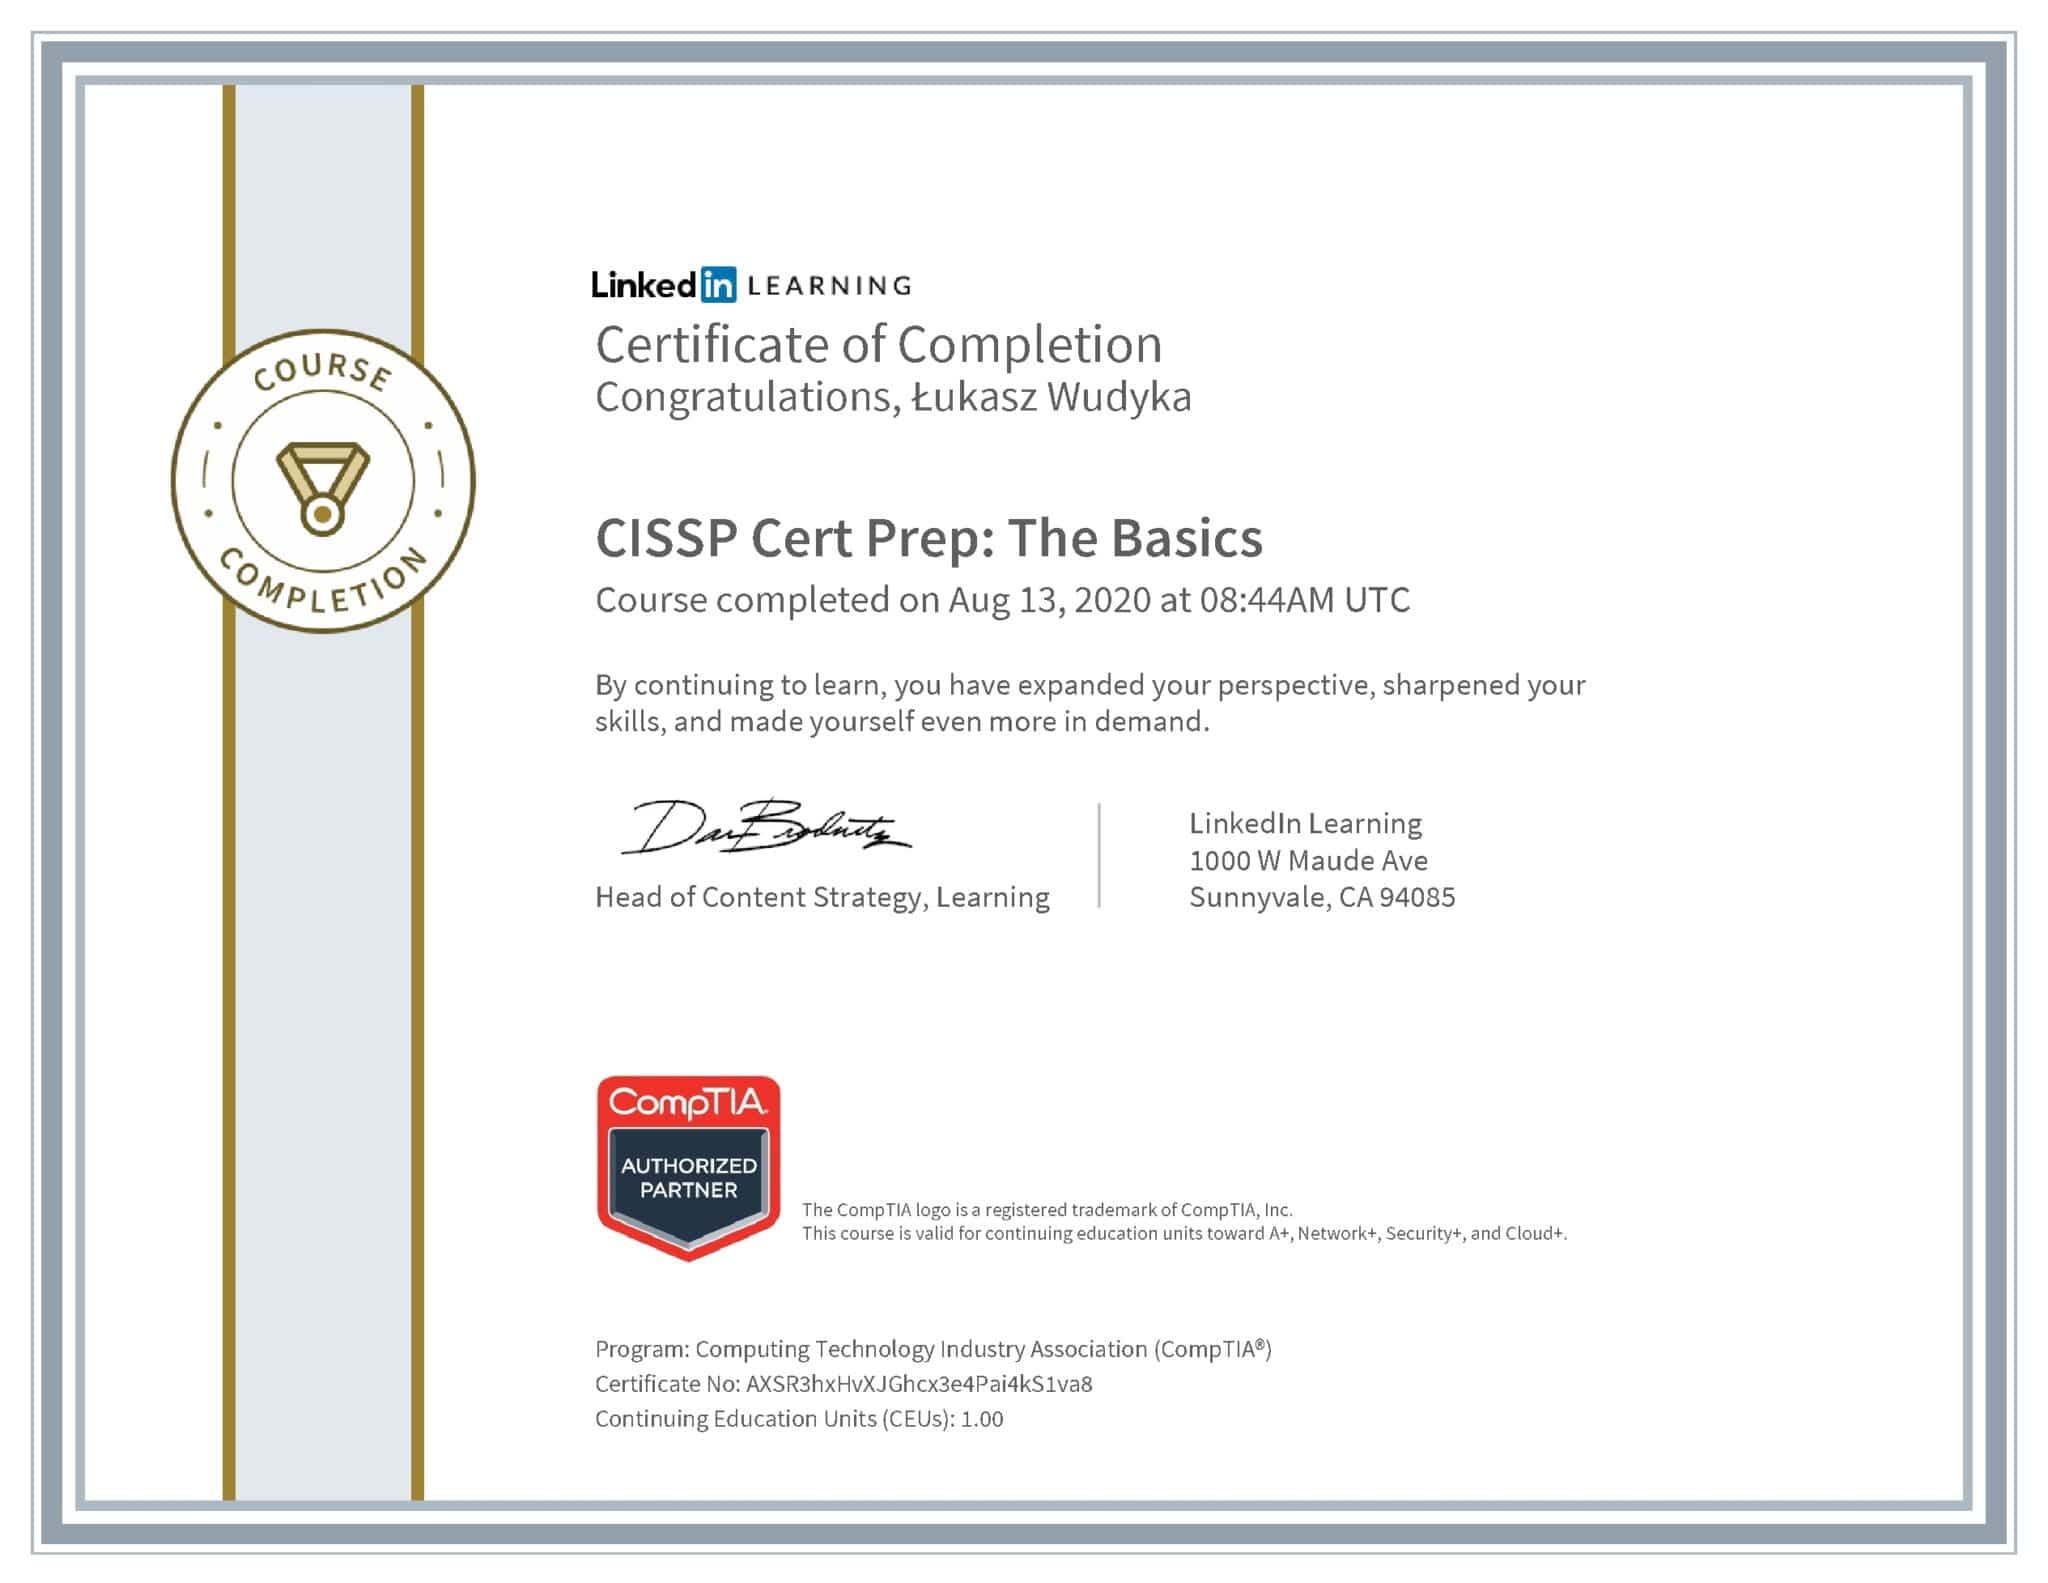 Łukasz Wudyka certyfikat LinkedIn CISSP Cert Prep: The Basics CompTIA